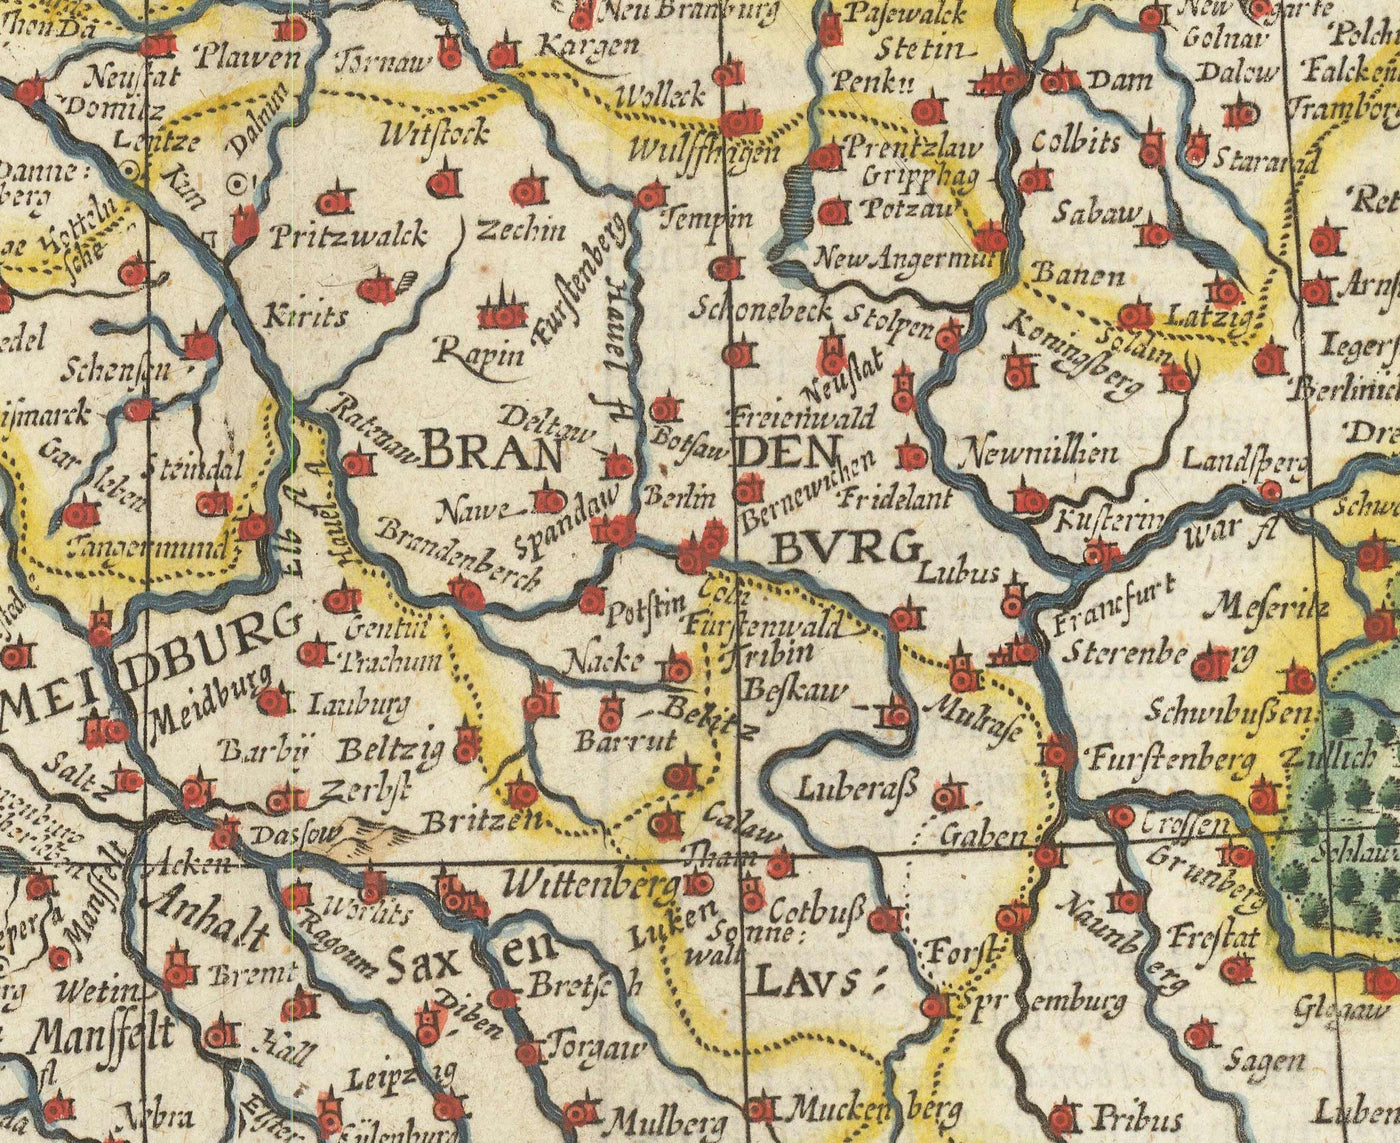 Ancienne carte de l'Allemagne de John Vitesse, 1627 - Saint Empire romain, Empire allemand - Autriche, Tchèque, Pologne, Suisse